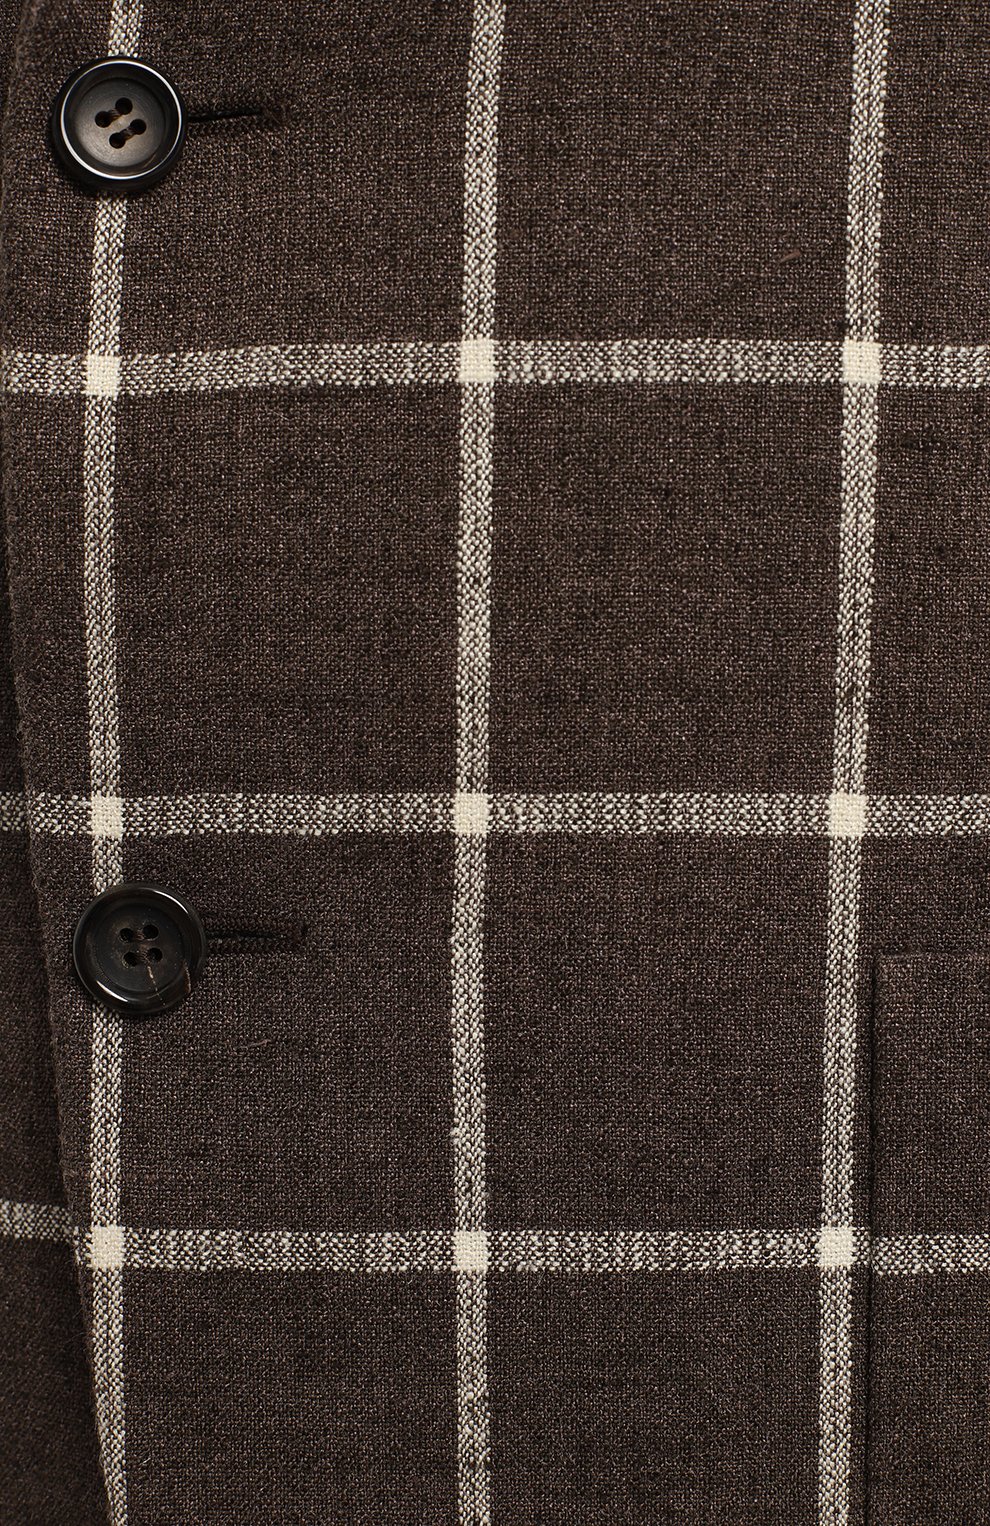 Пиджак из шелка и льна | Canali | Коричневый - 3